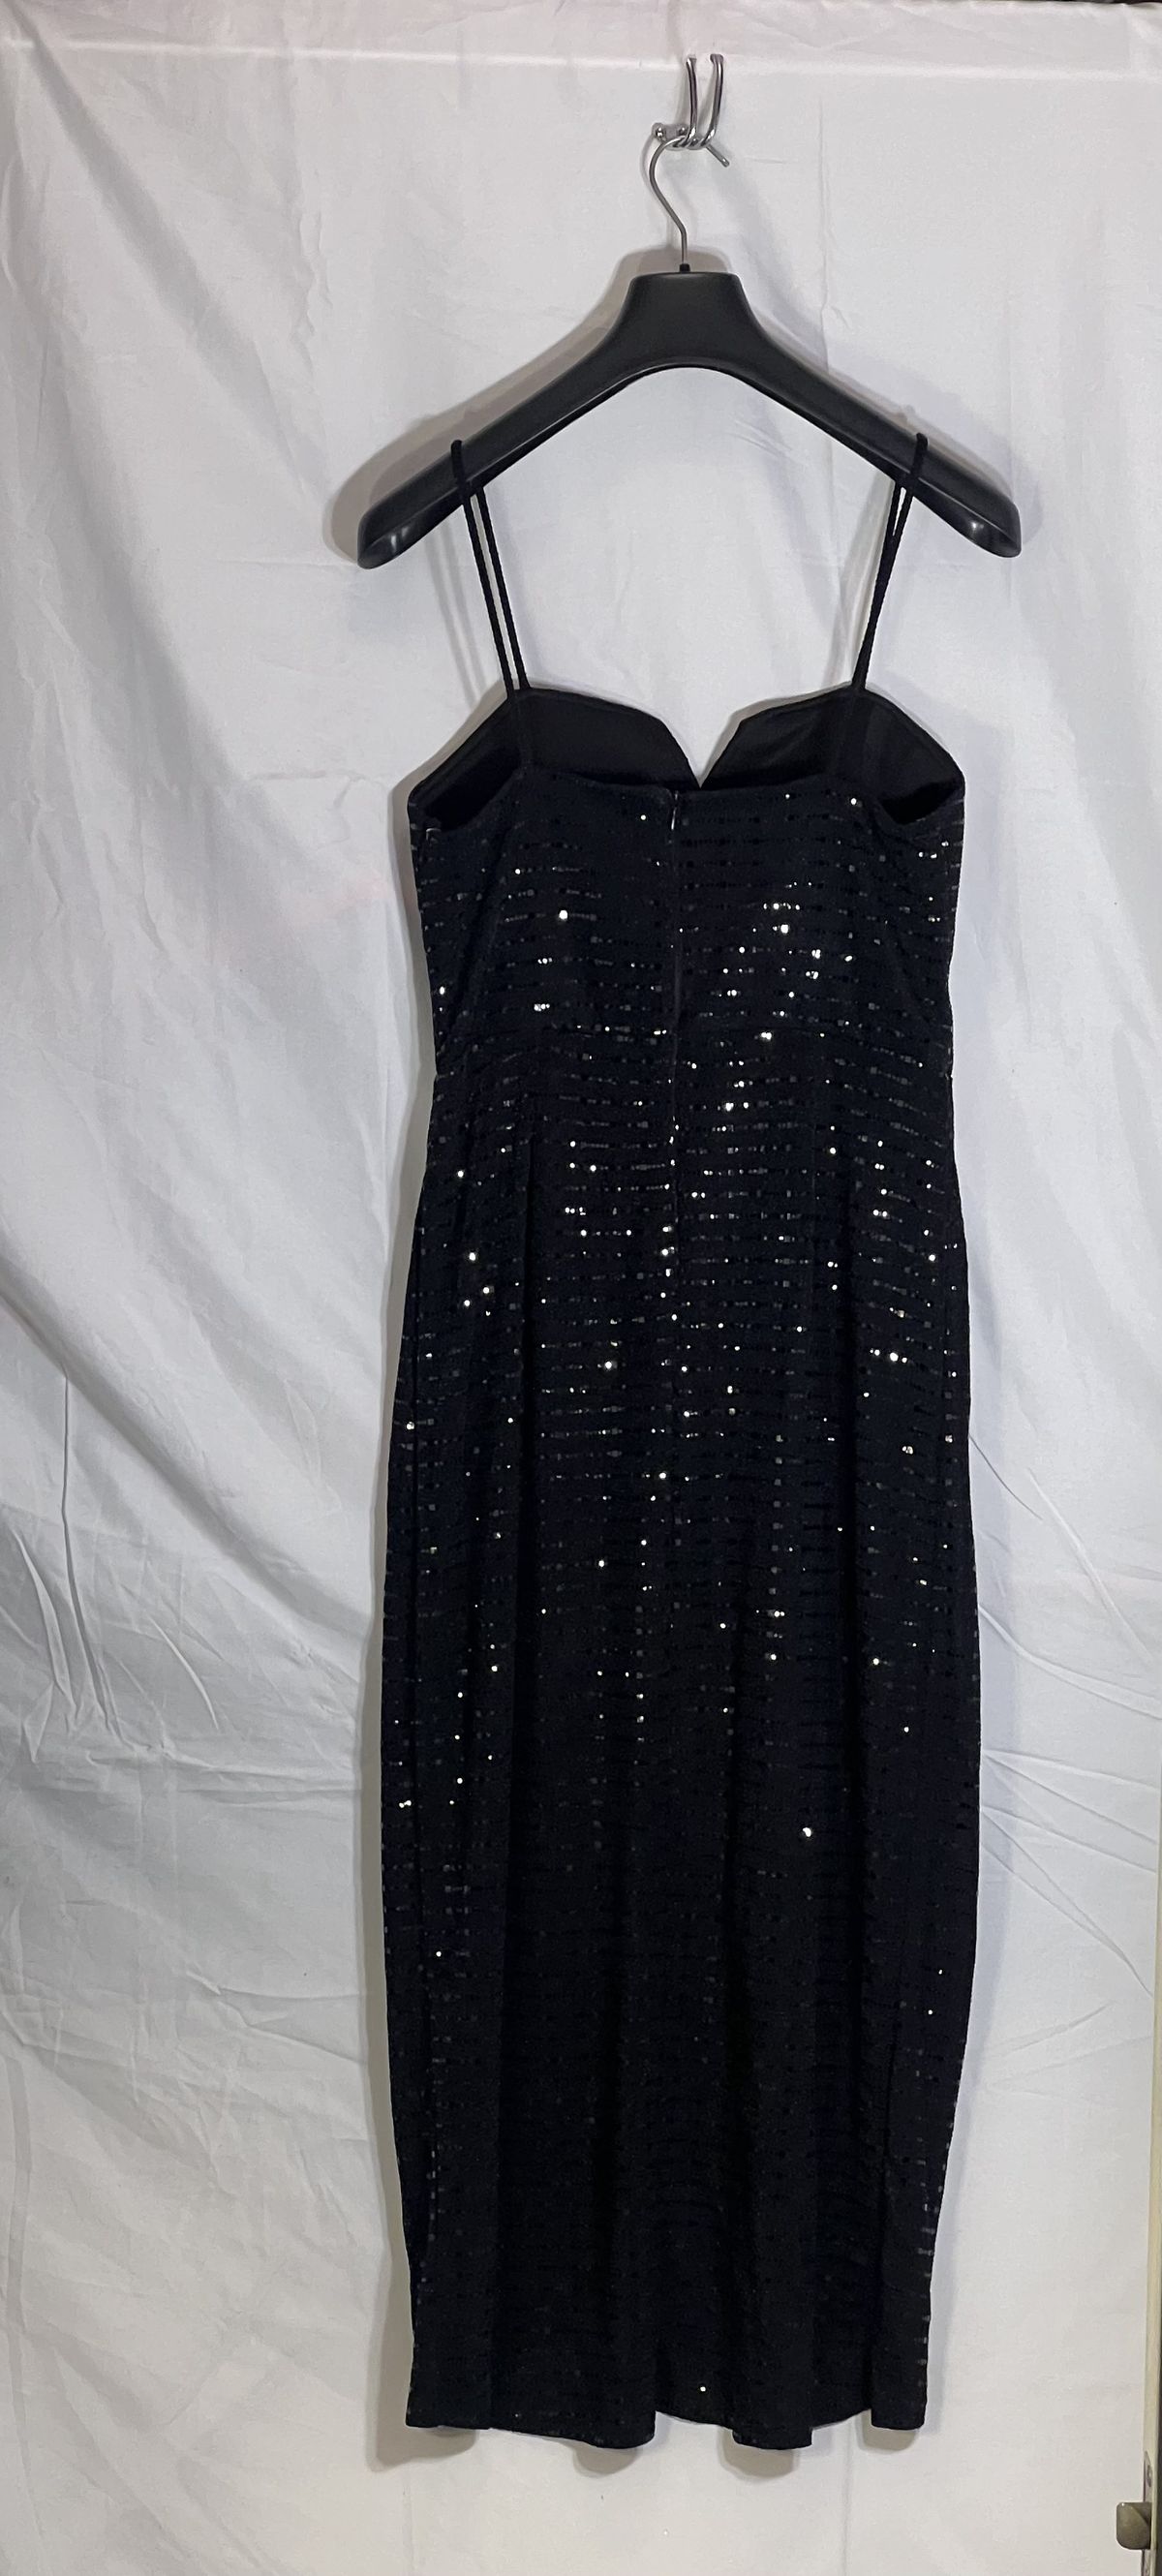 Alexa B Nites Size 12 Plunge Black Side Slit Dress on Queenly